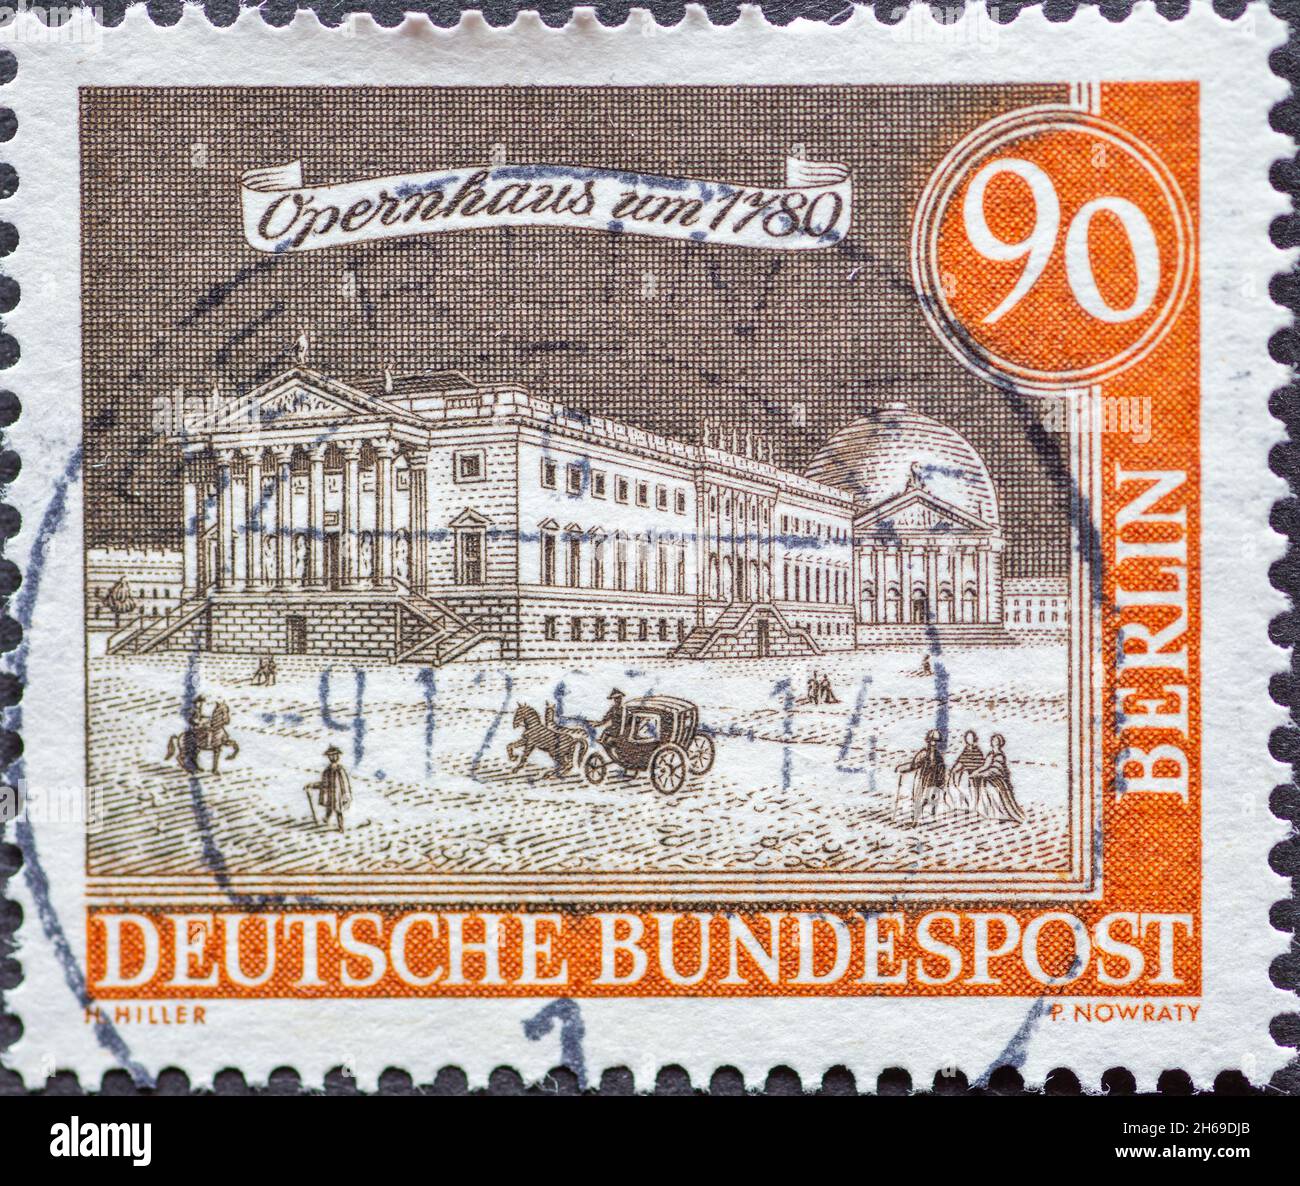 ALLEMAGNE, Berlin - VERS 1963: Ce timbre-poste de l'Allemagne, Berlin montrant le Vieux Berlin: Opéra vers 1780 Banque D'Images